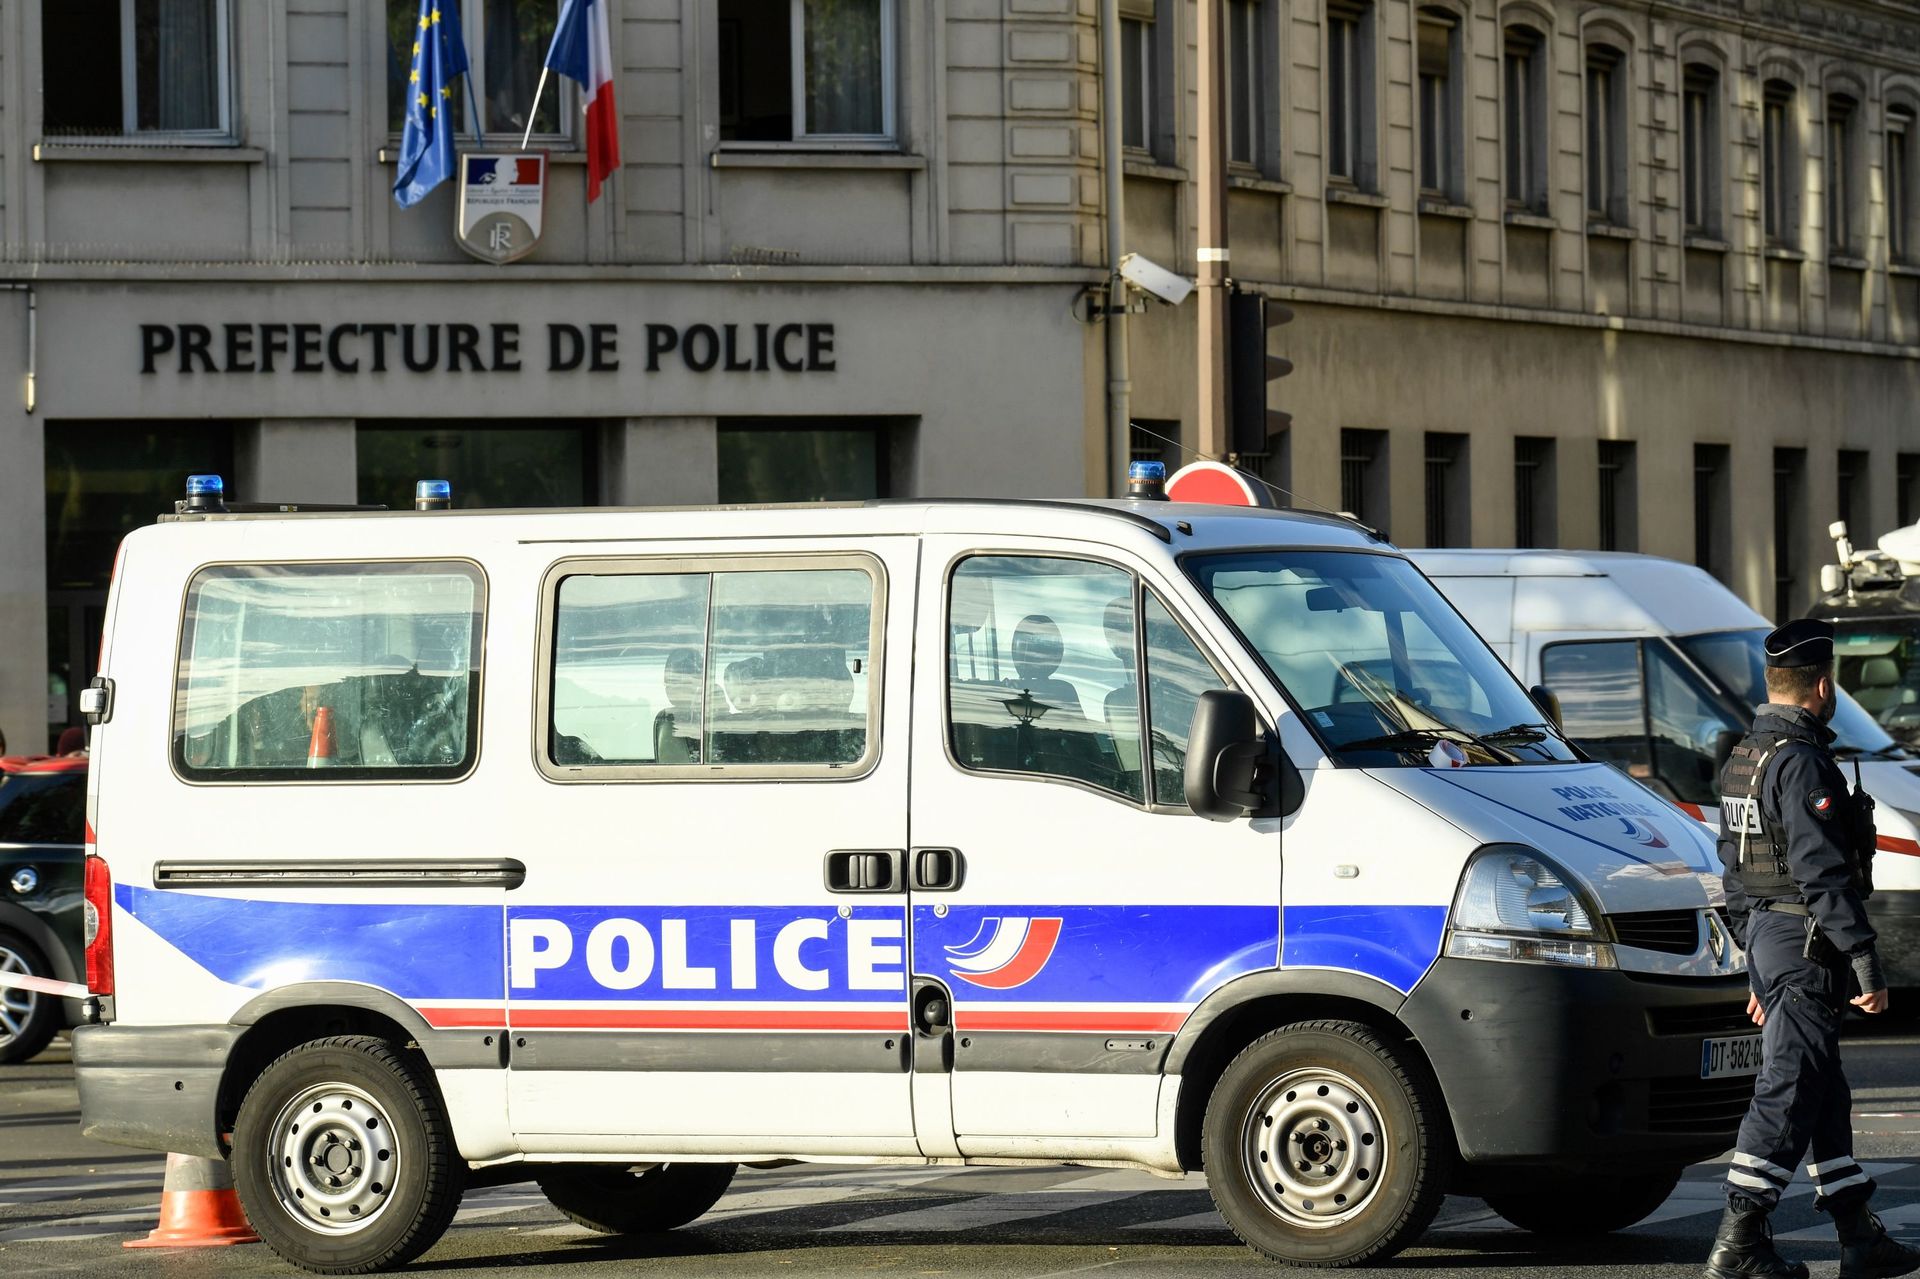 La préfecture de police de Paris héberge notamment un service de Renseignement.
